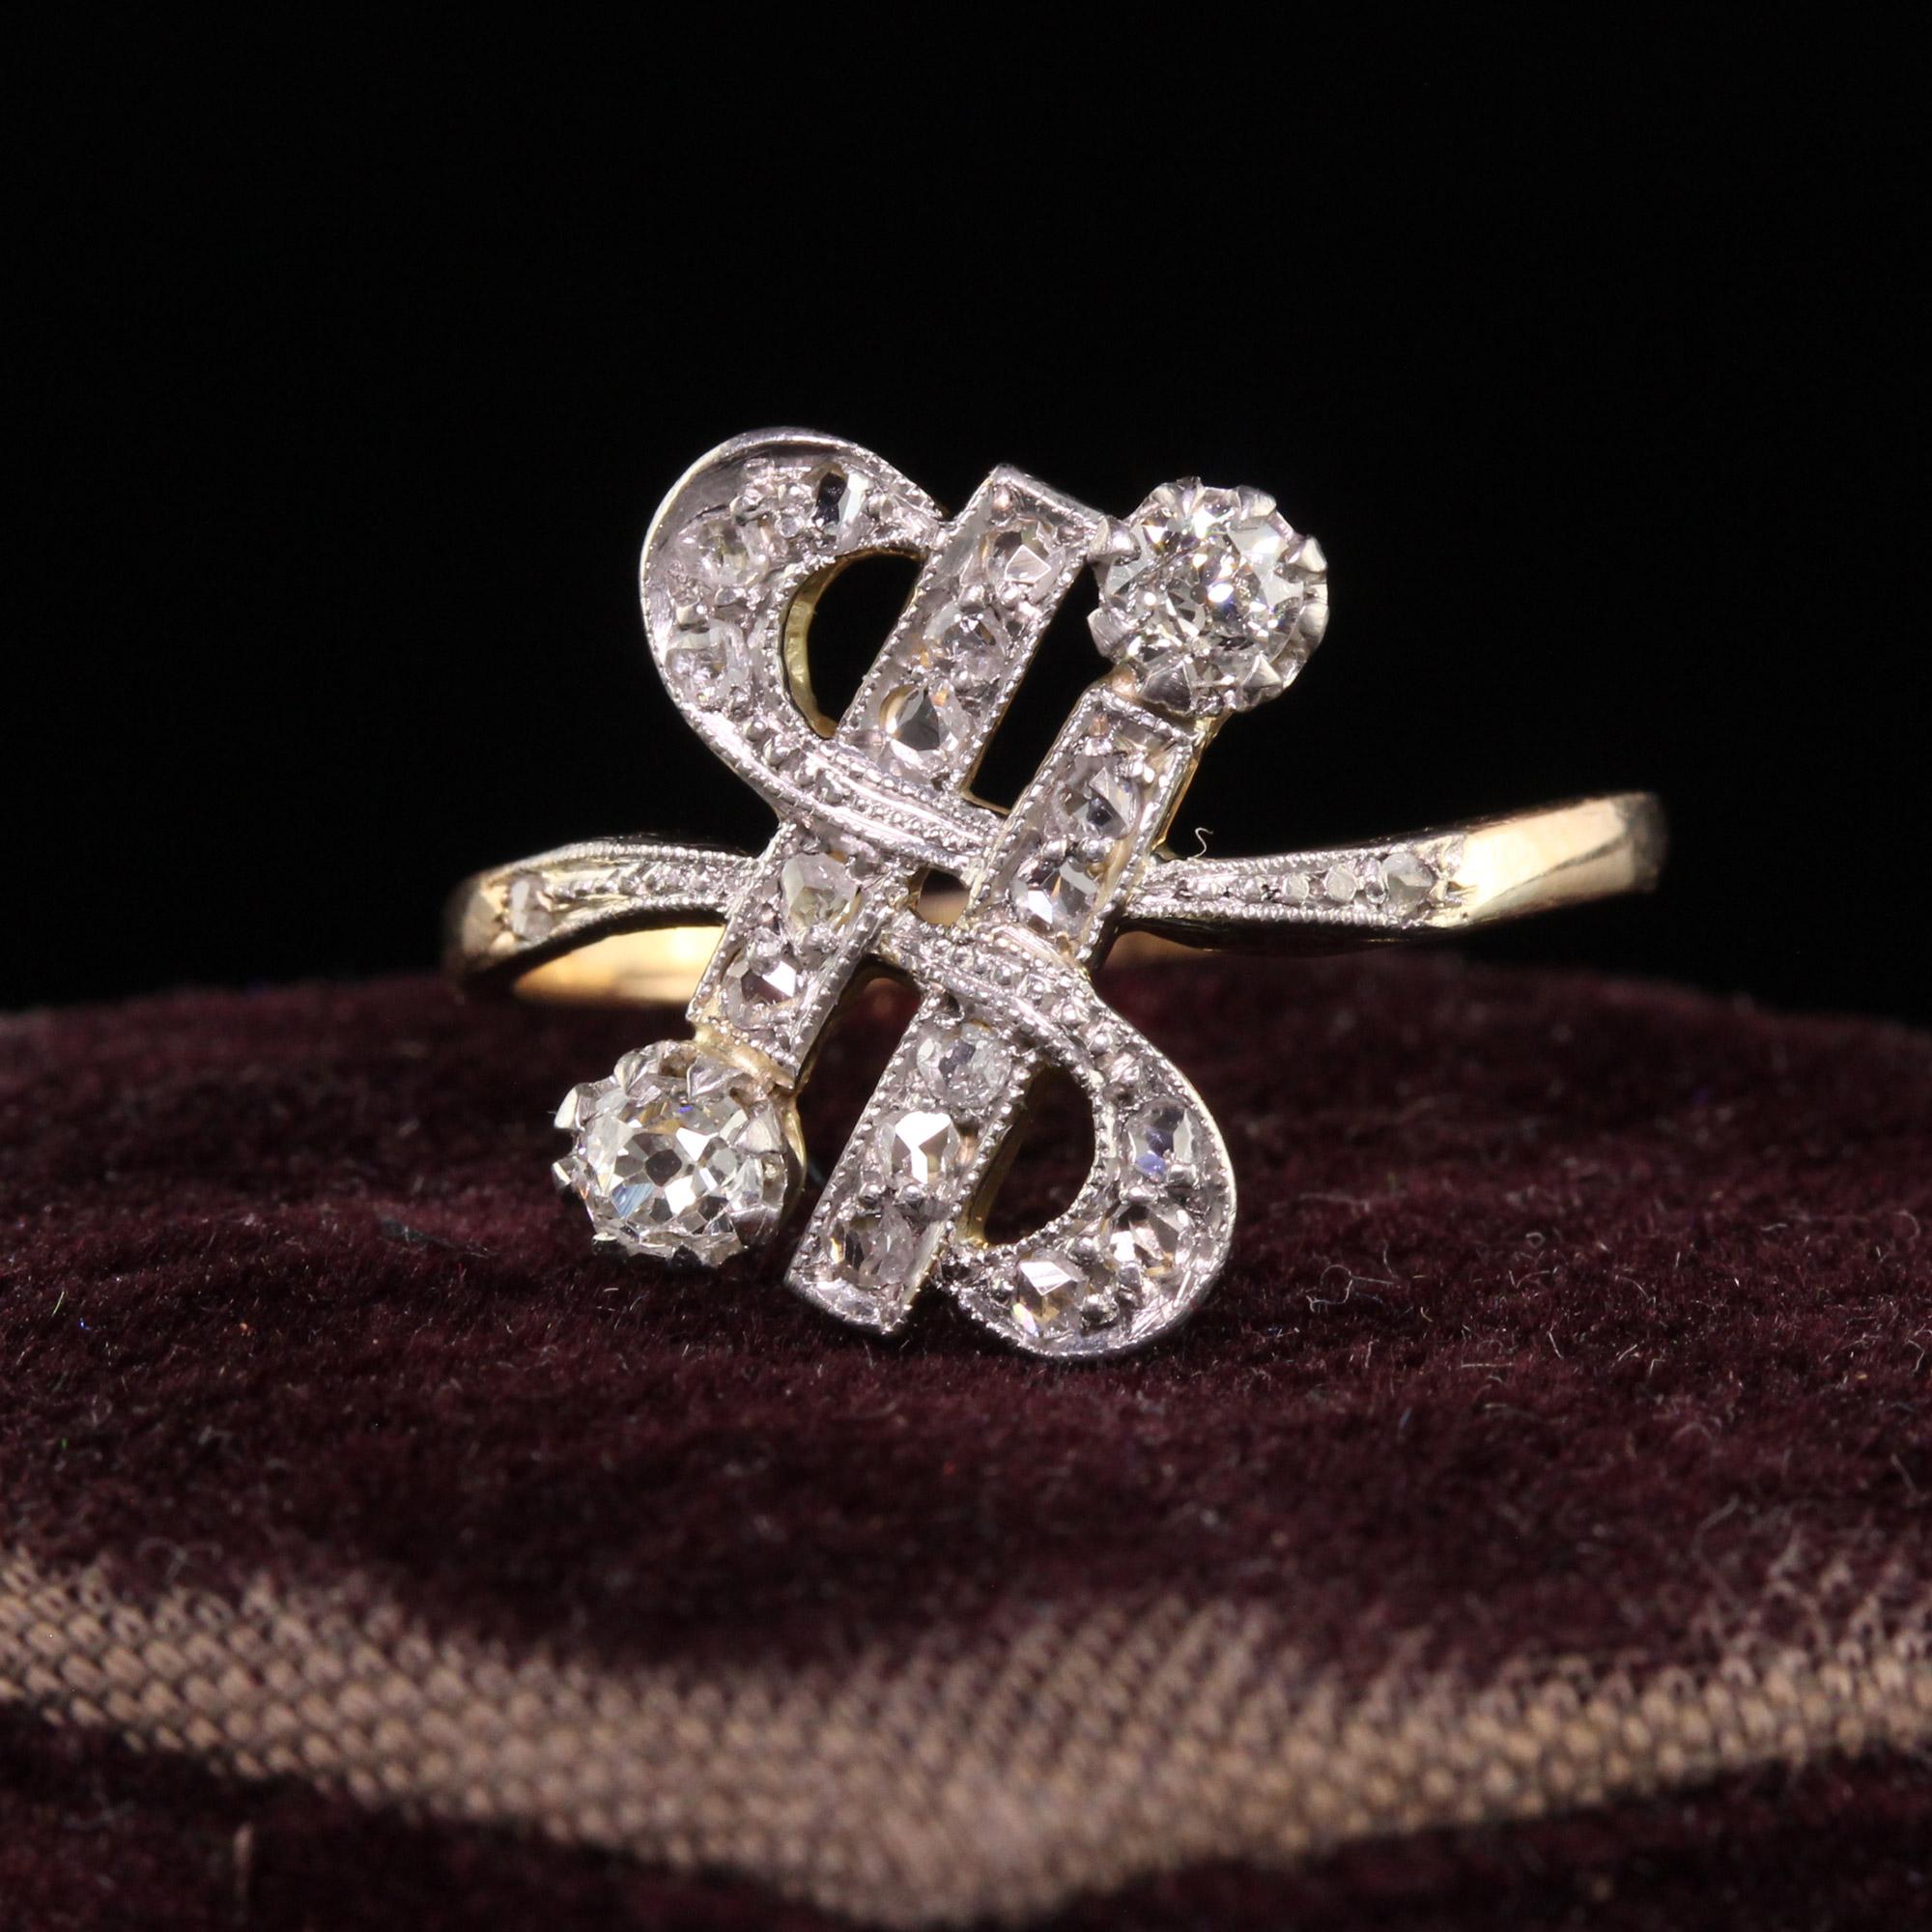 Schöne antike Edwardian 18K Gelbgold Platin Top Old Mine Diamond Ring. Dieser schöne Ring ist in 18 Karat Gelbgold und Platin oben gefertigt. Der Ring hat Diamanten im Minen- und Rosenschliff in einem wunderschönen Design. Der Ring ist in sehr gutem